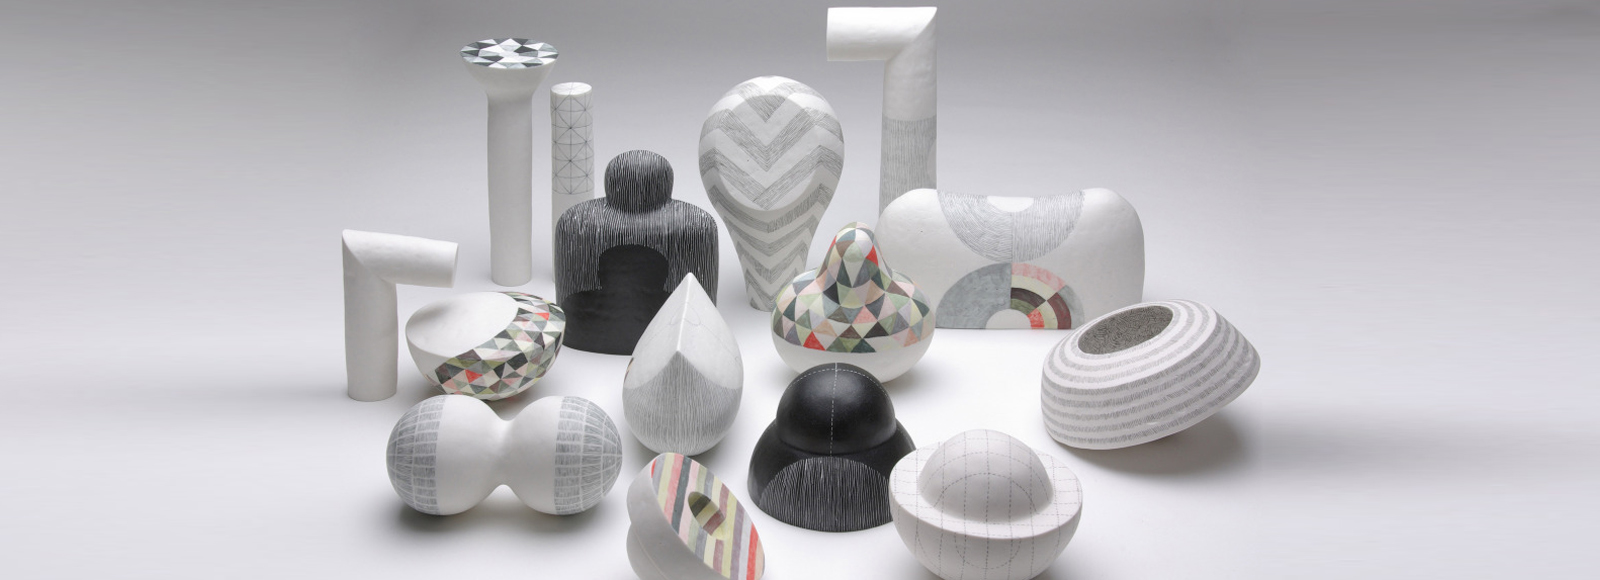 Ceramicist Tania Rollond